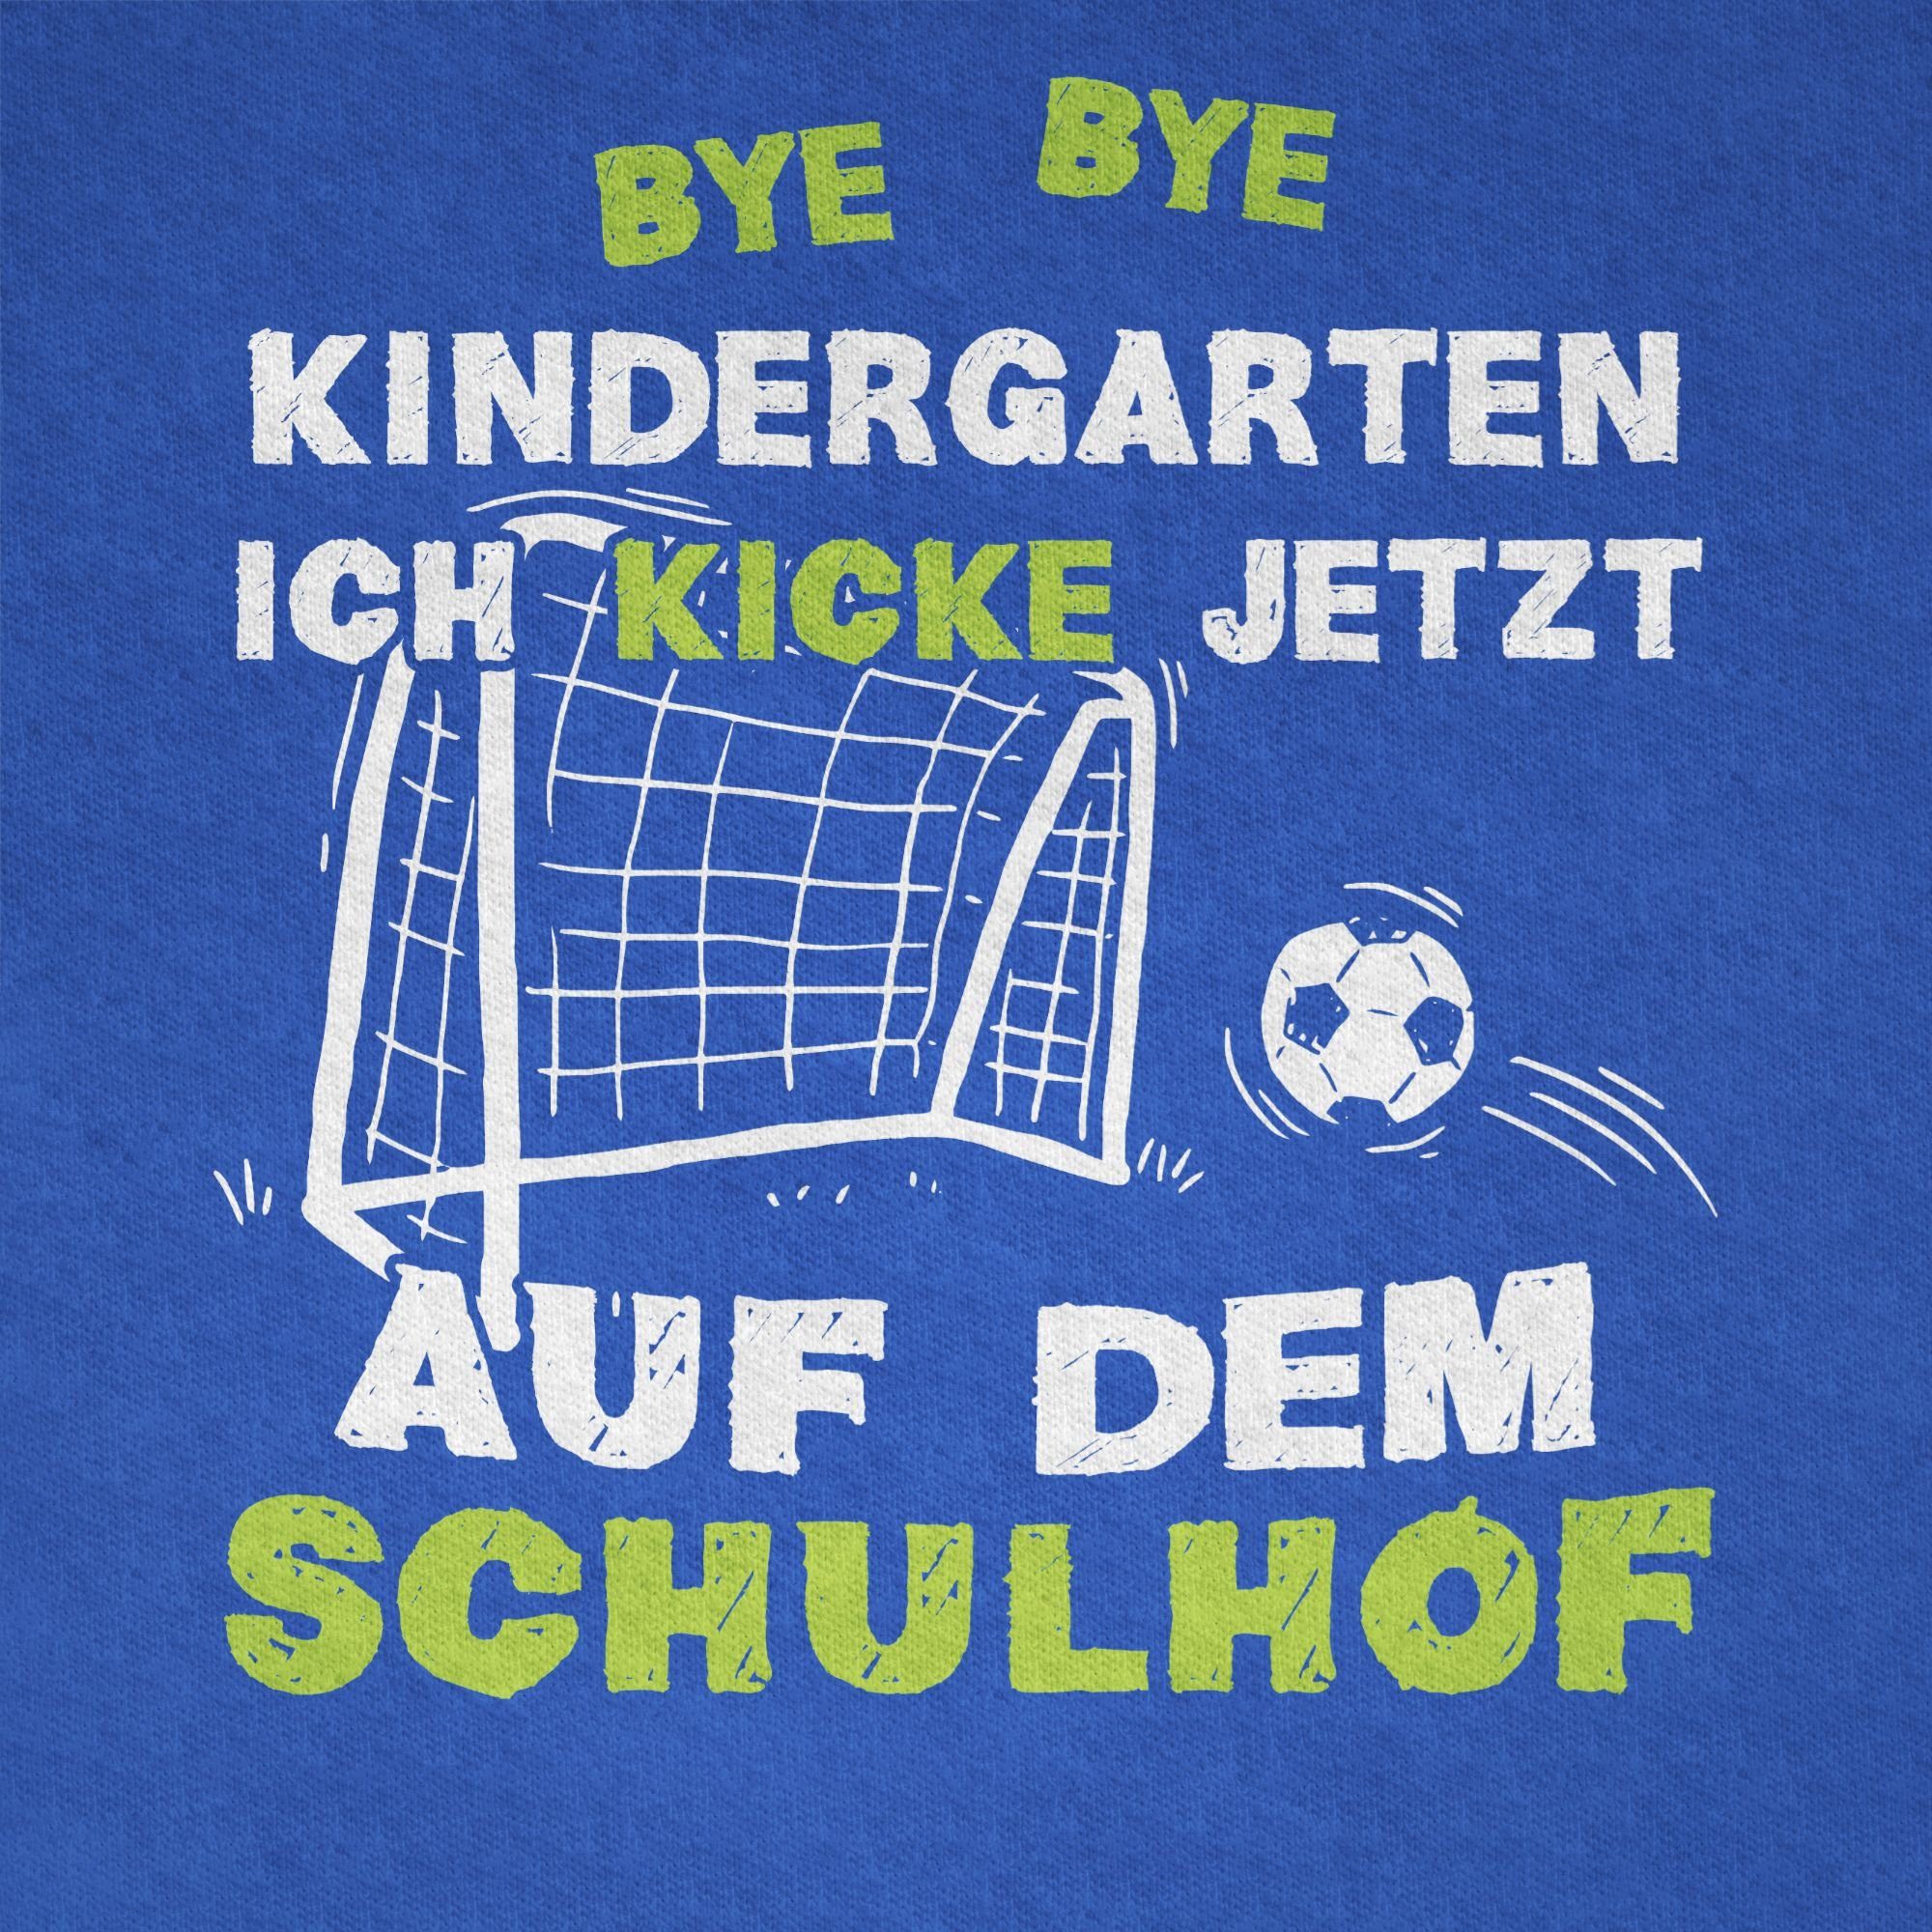 Shirtracer T-Shirt Schulanfang 02 Junge - Bye Geschenke Bye Schulhof Royalblau Kindergarten Kicke Einschulung